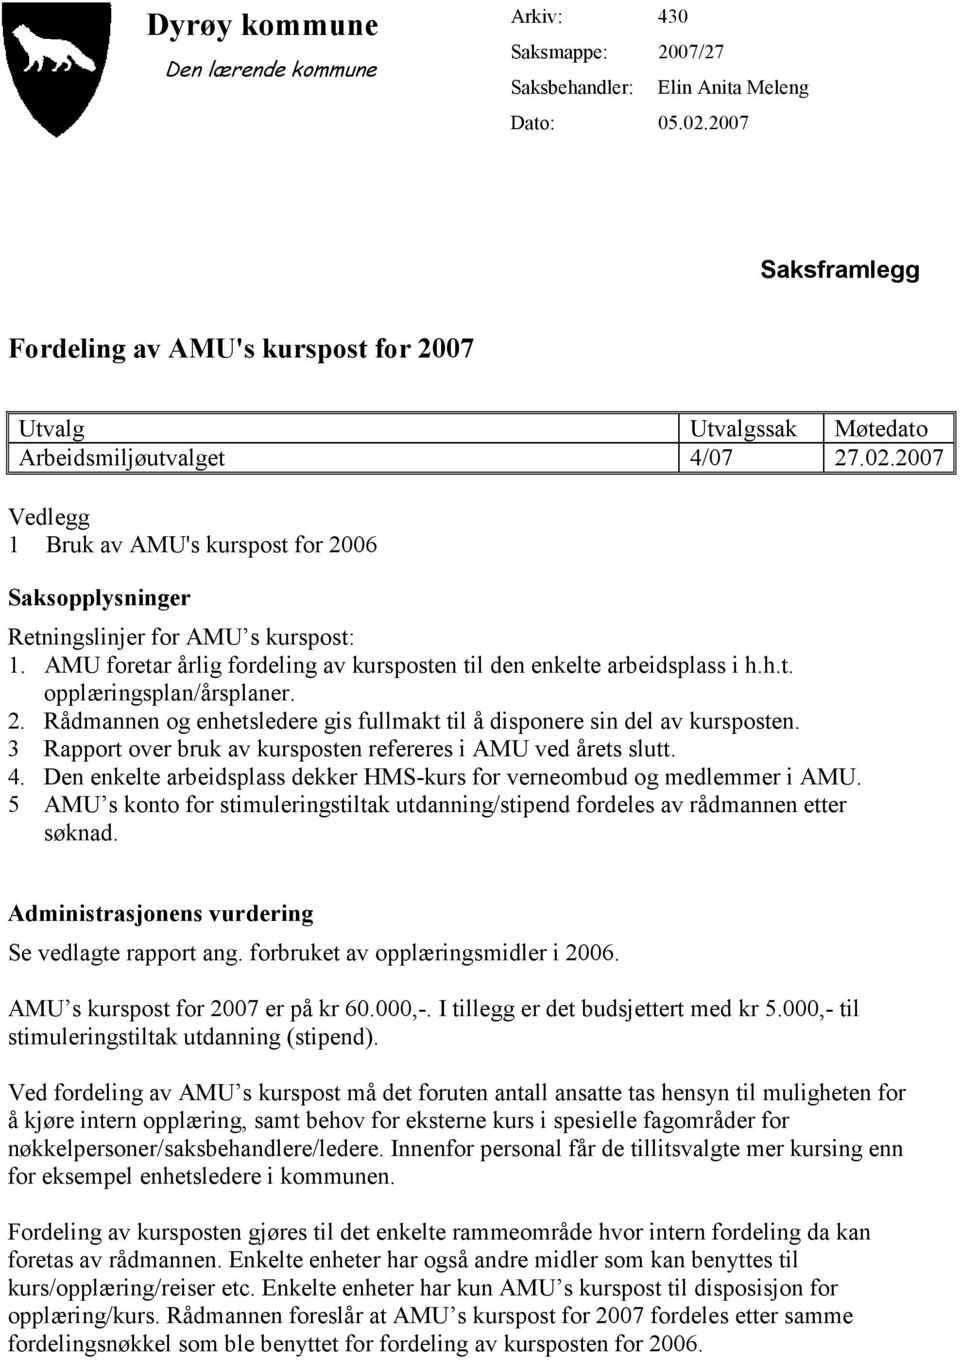 2007 Vedlegg 1 Bruk av AMU's kurspost for 2006 Saksopplysninger Retningslinjer for AMU s kurspost: 1. AMU foretar årlig fordeling av kursposten til den enkelte arbeidsplass i h.h.t. opplæringsplan/årsplaner.